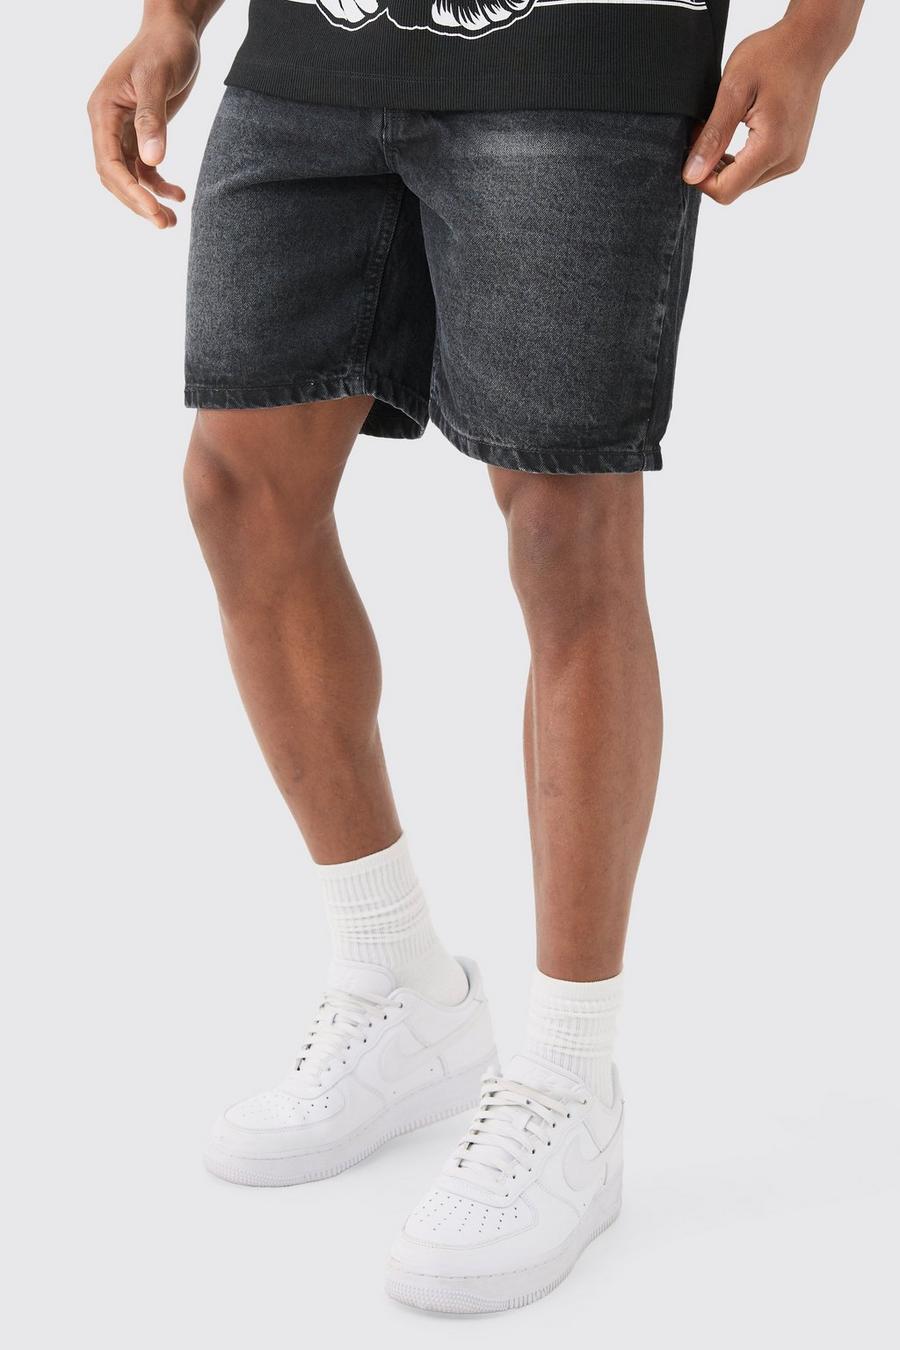 Pantalones cortos vaqueros ajustados sin tratar en color carbón, Charcoal image number 1